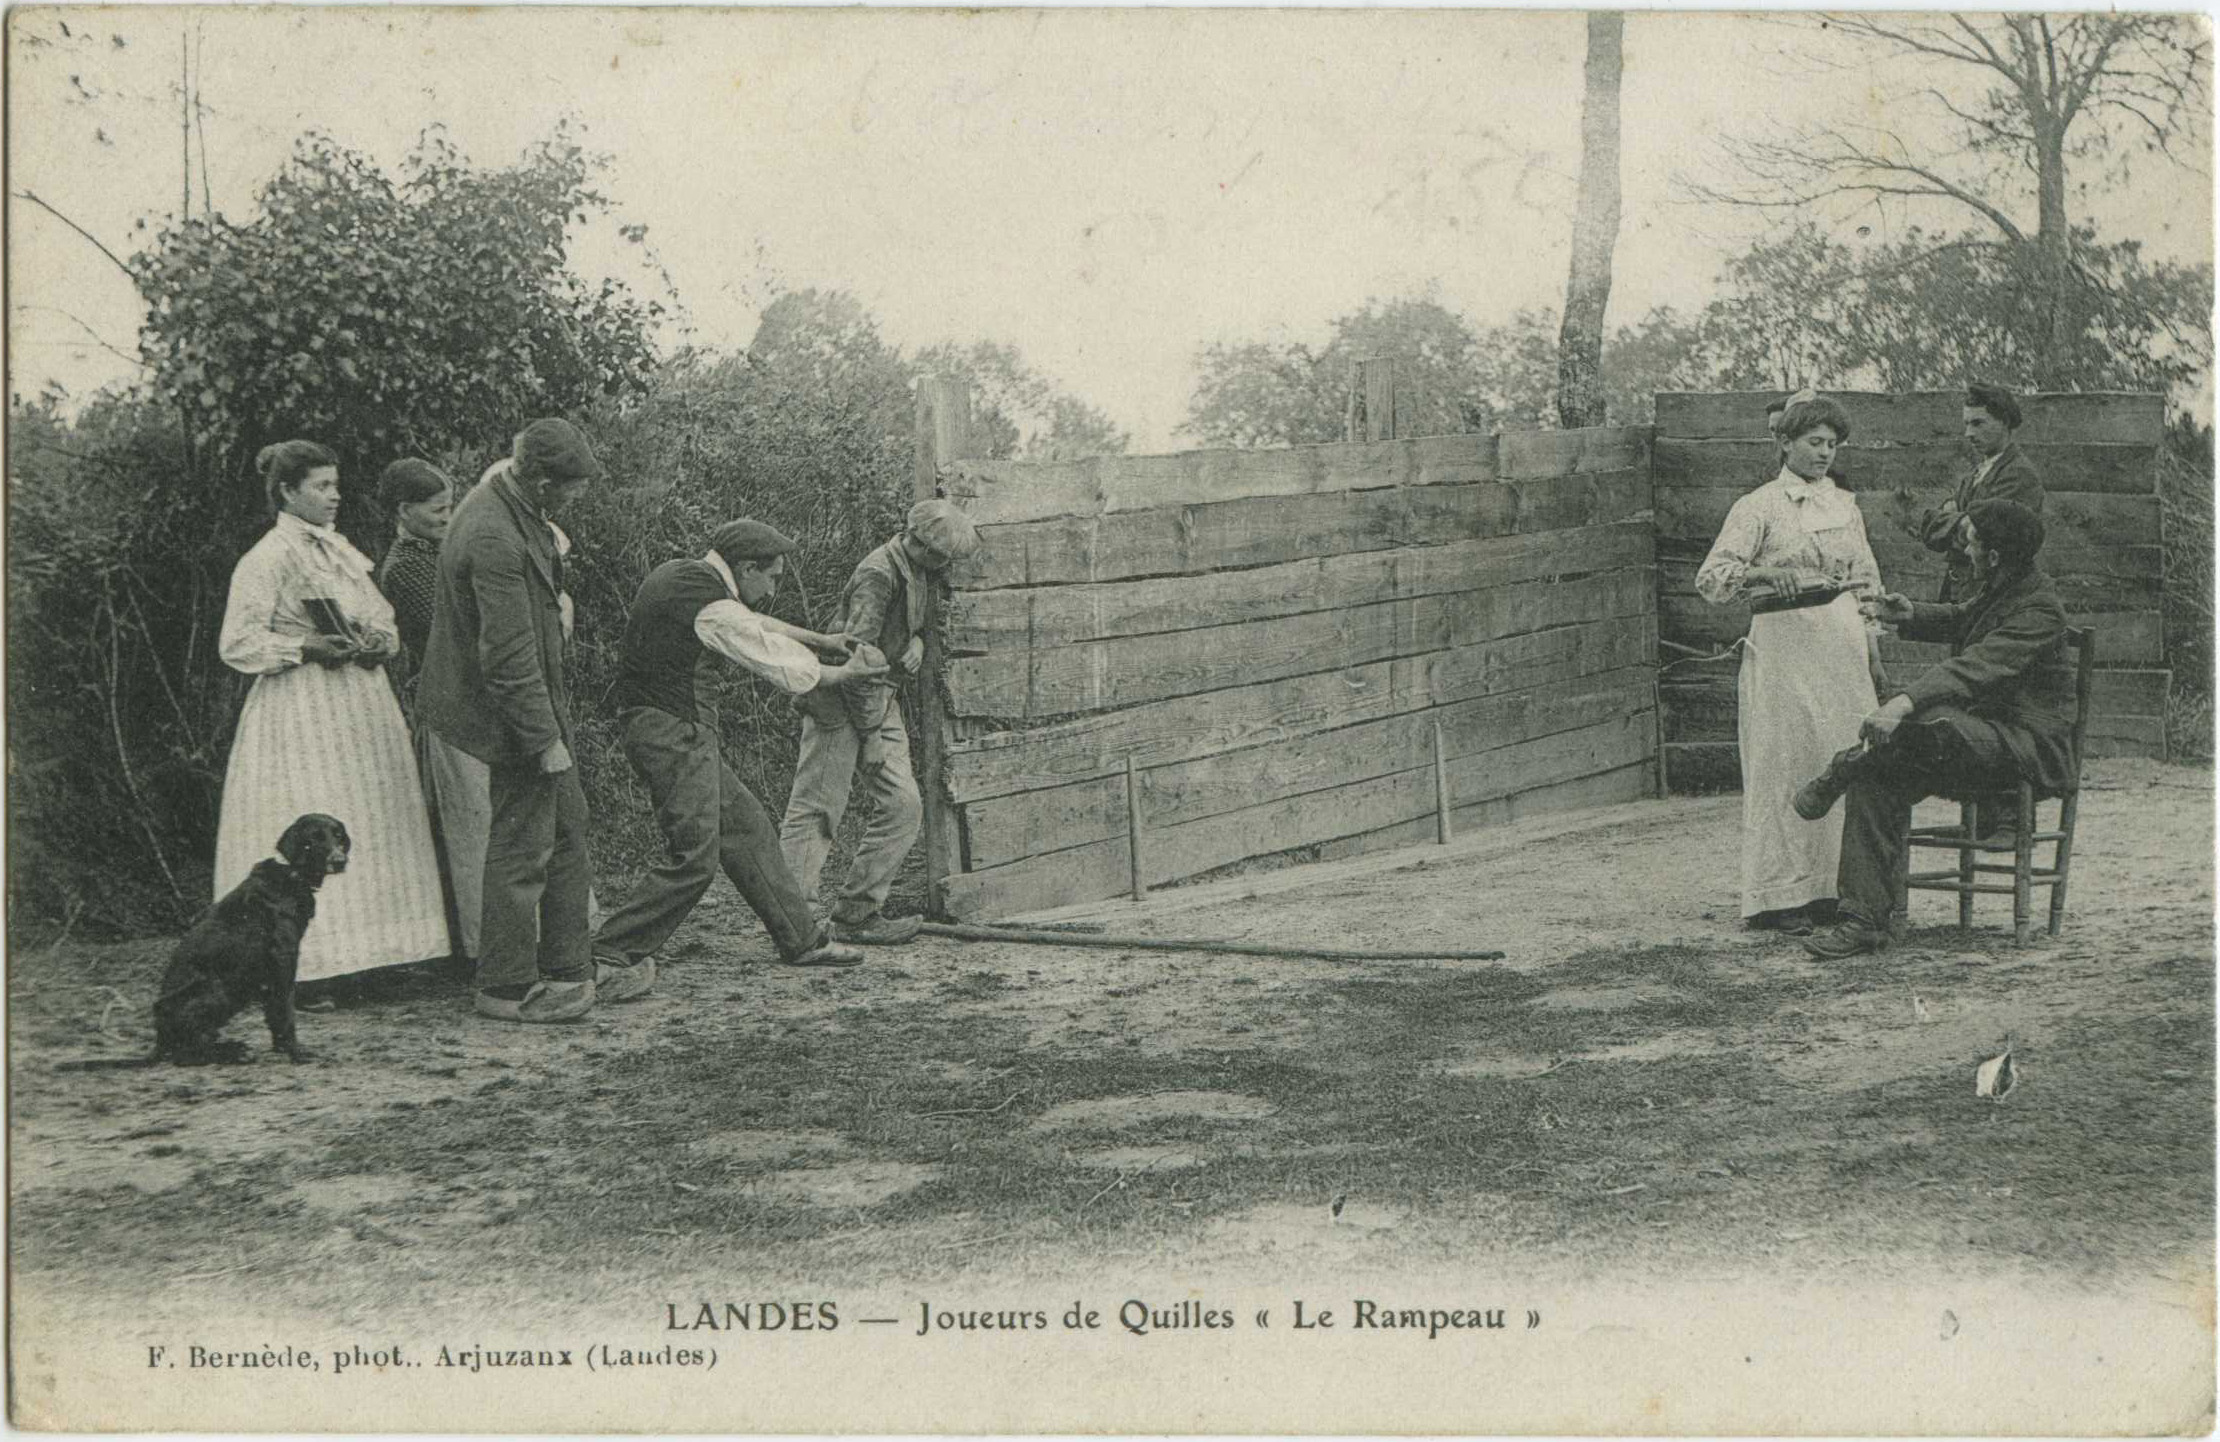 Landes - LANDES - Joueurs de Quilles « Le Rampeau »